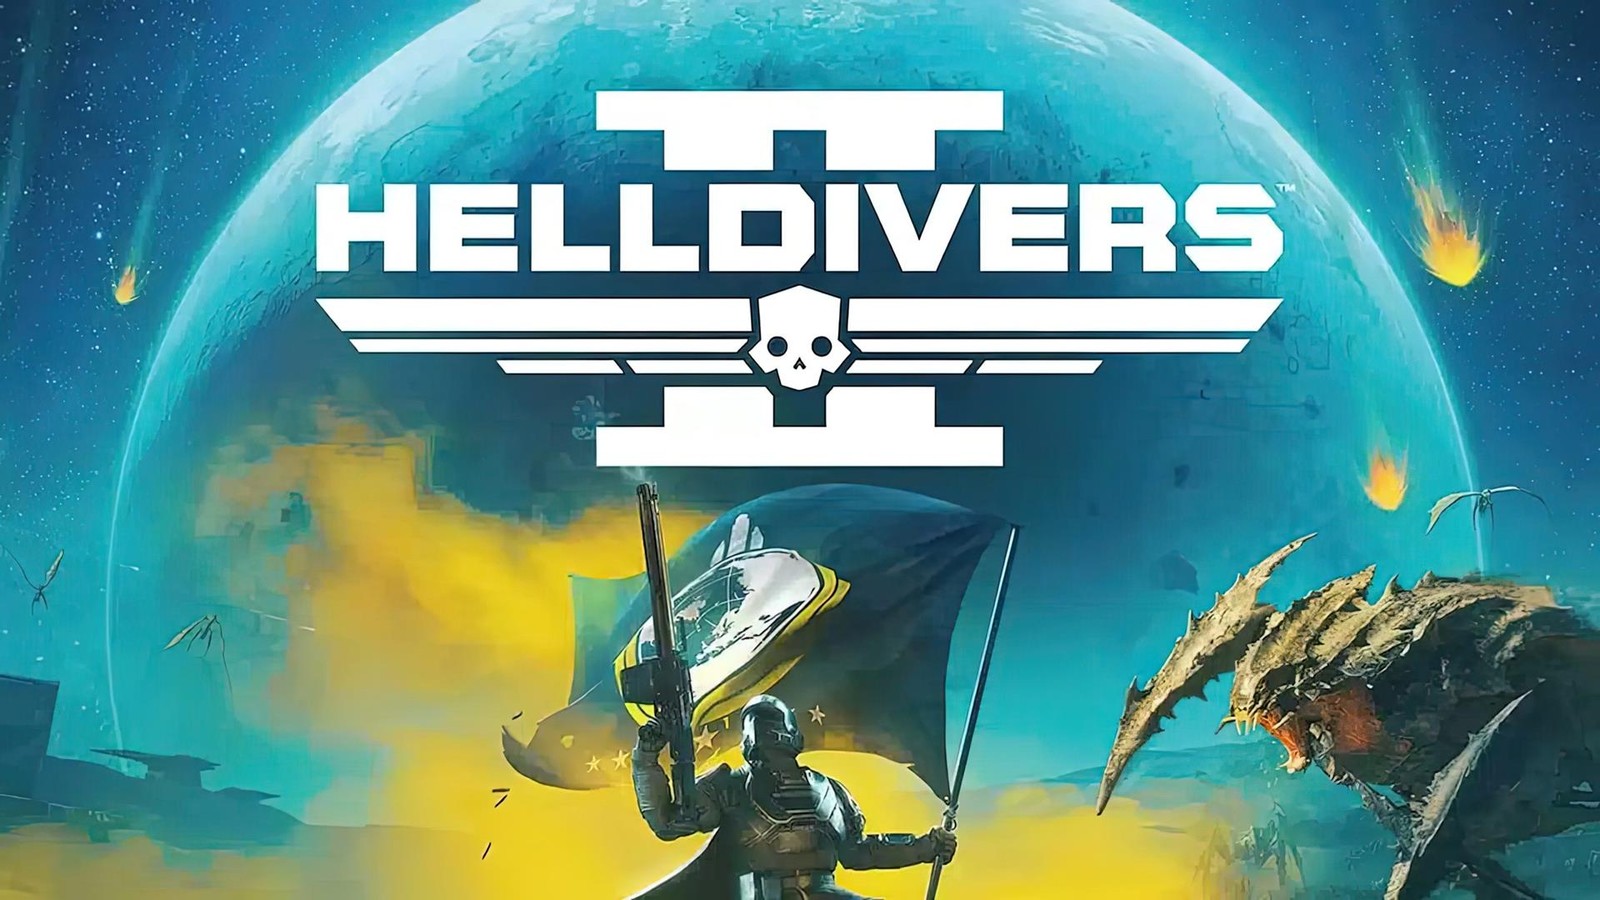 Sprzedaż Helldivers 2. Sukces “gry od Sony” na pecety i konsole do małych nie należy